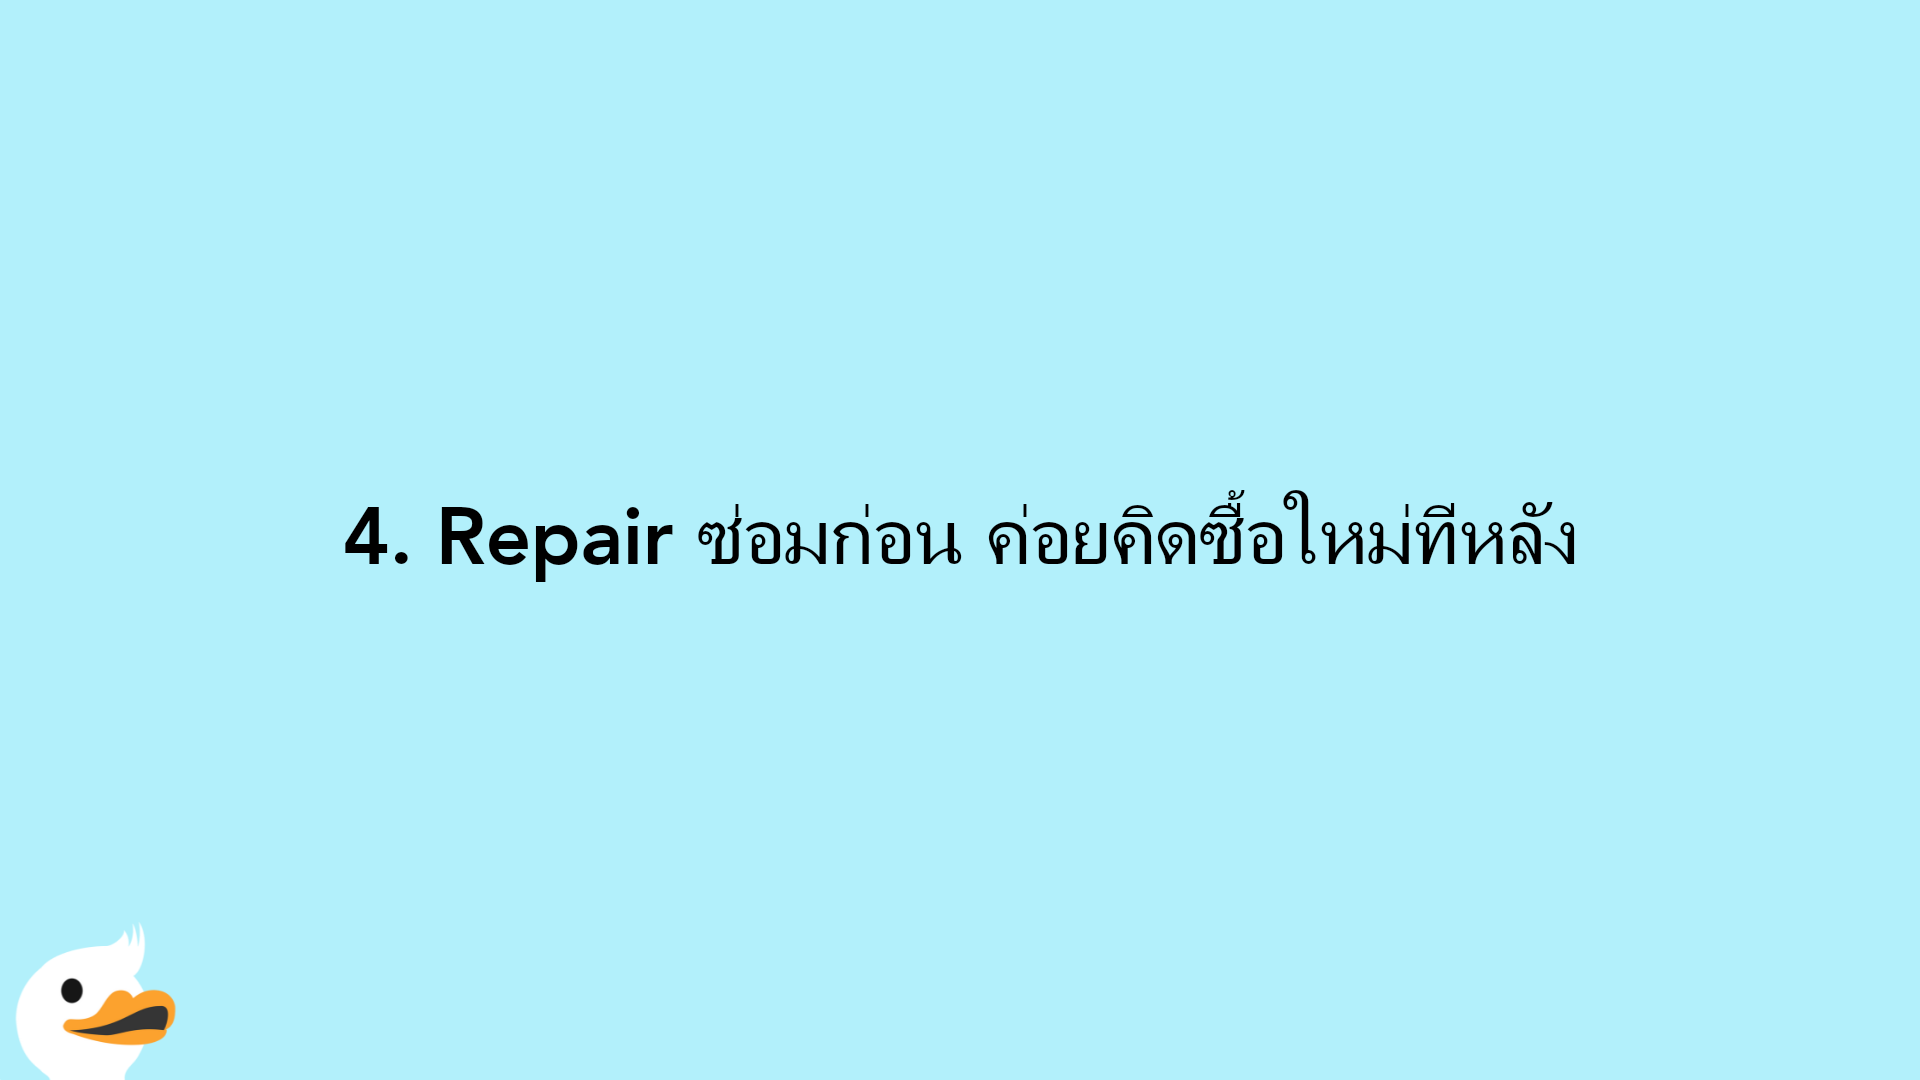 4. Repair ซ่อมก่อน ค่อยคิดซื้อใหม่ทีหลัง